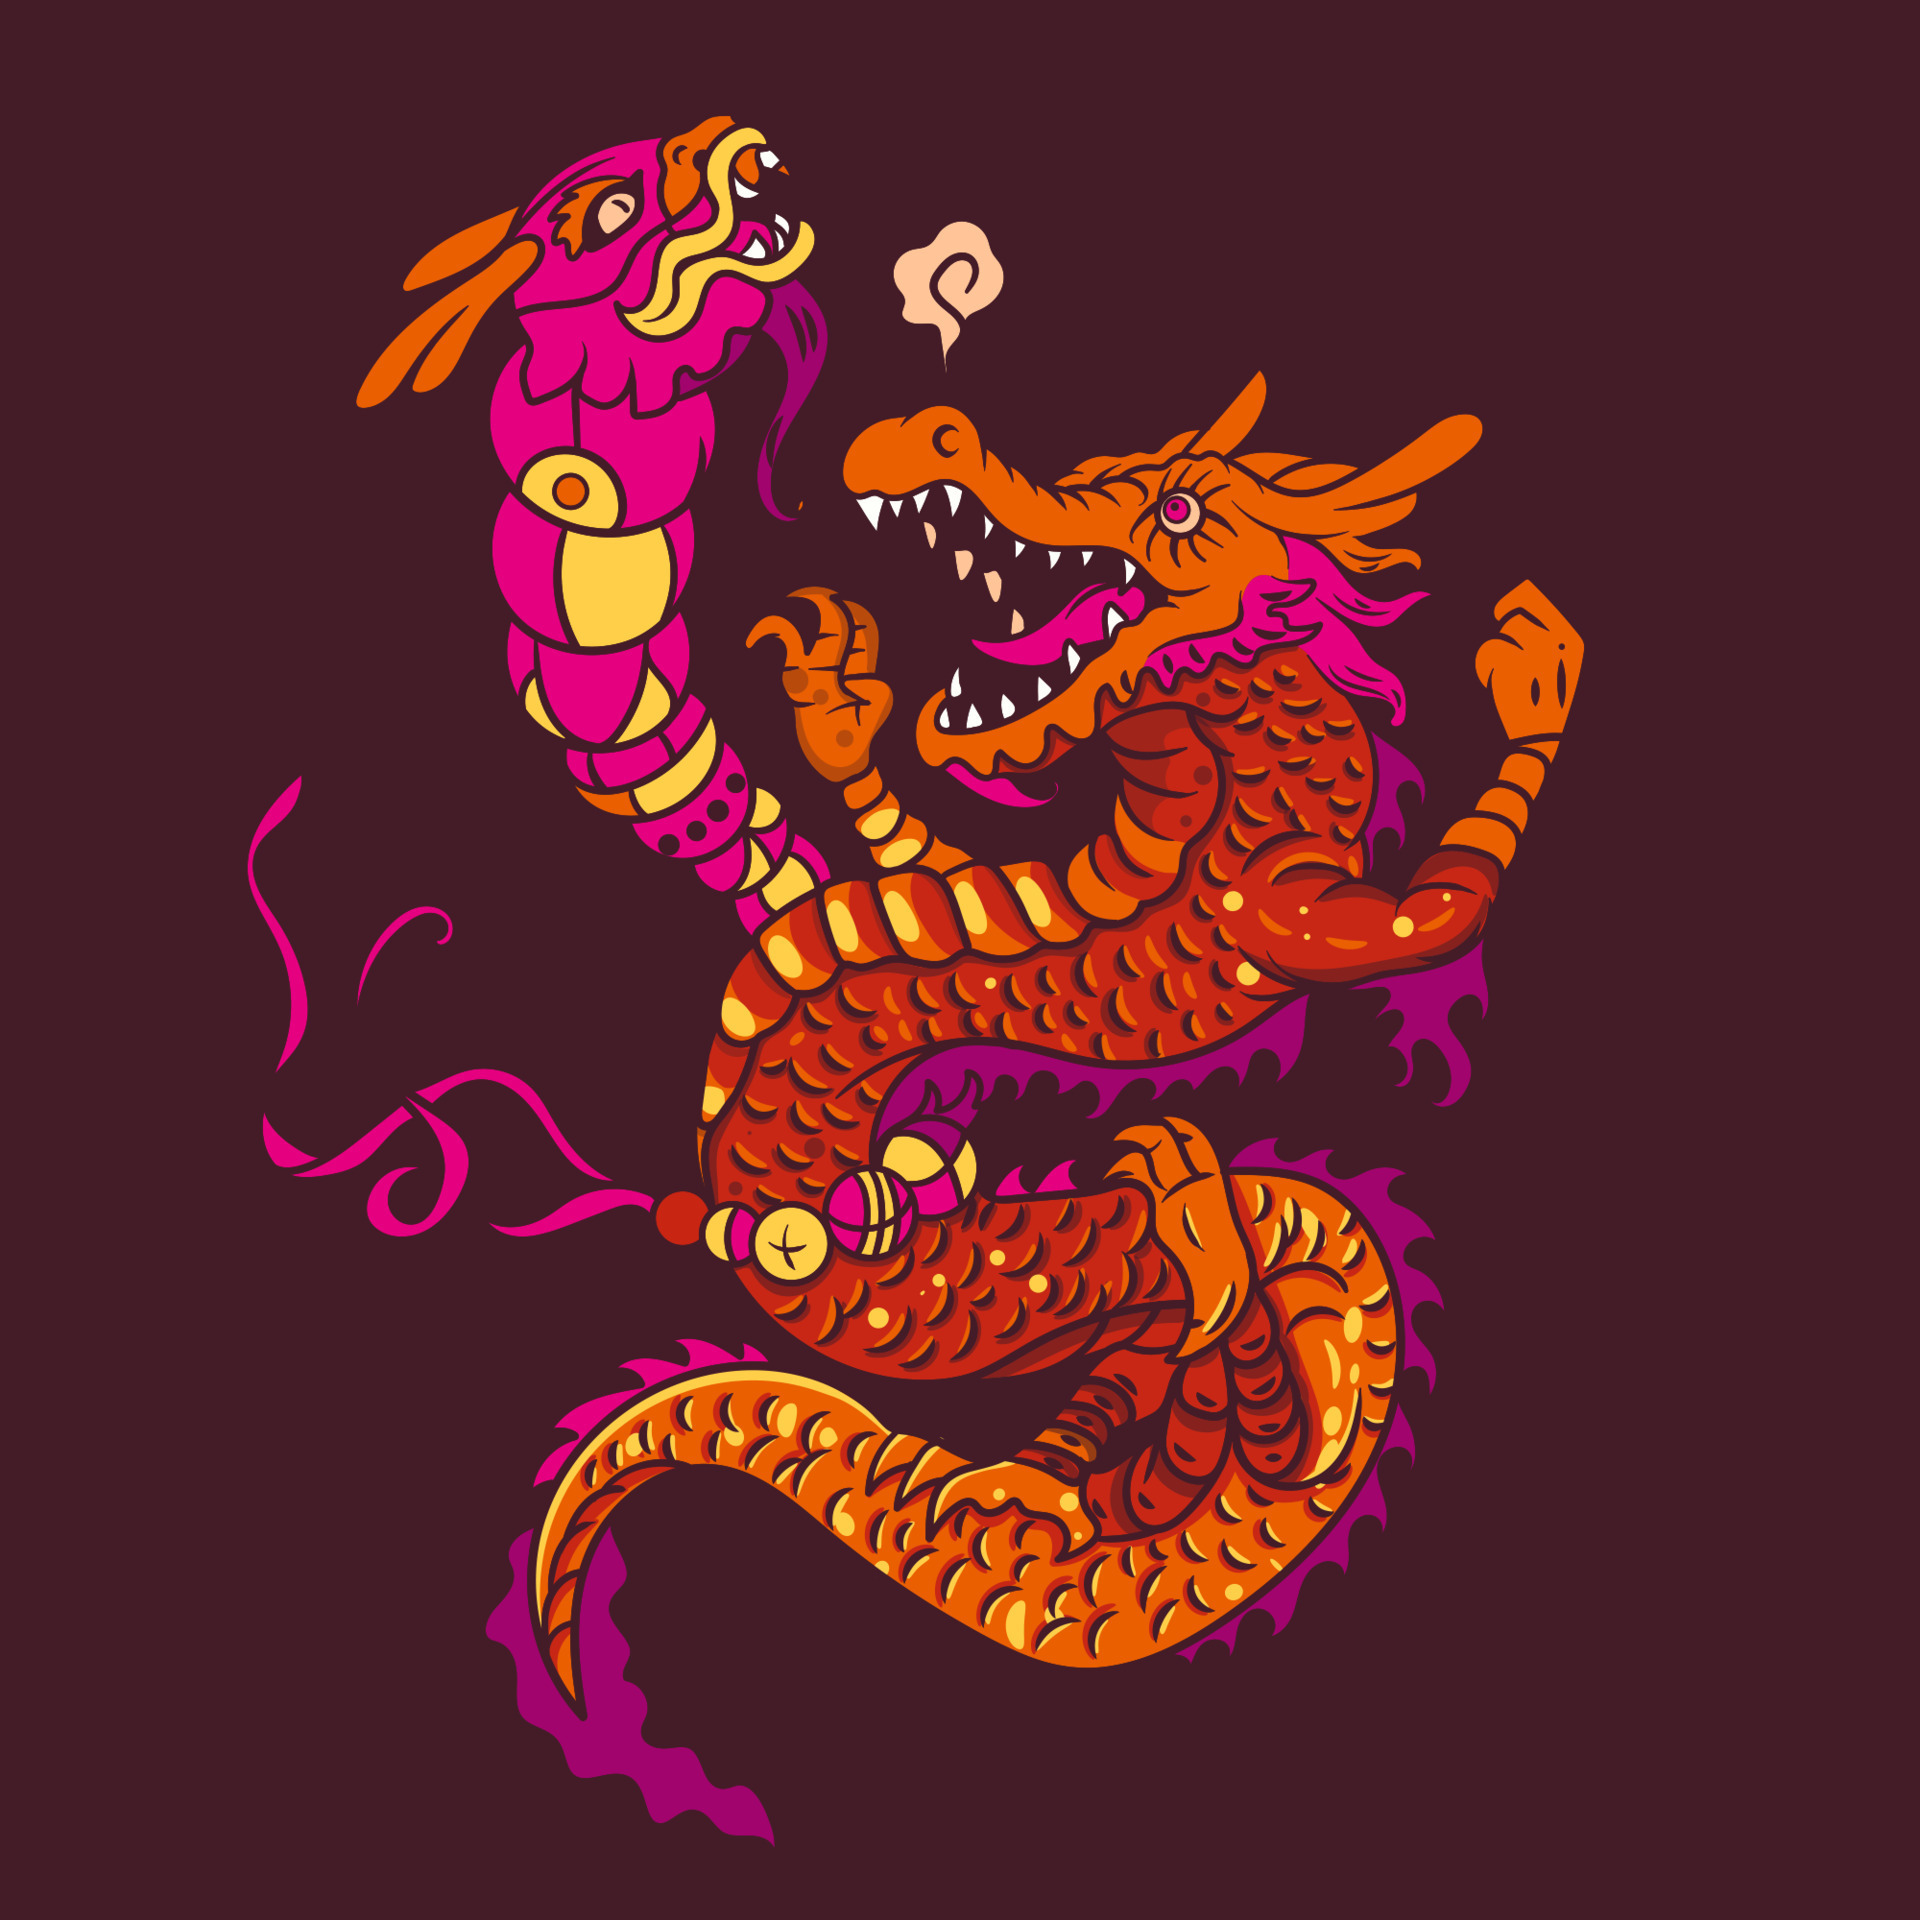 Logotipo do jogo do dragão ilustração stock. Ilustração de amor - 114640390